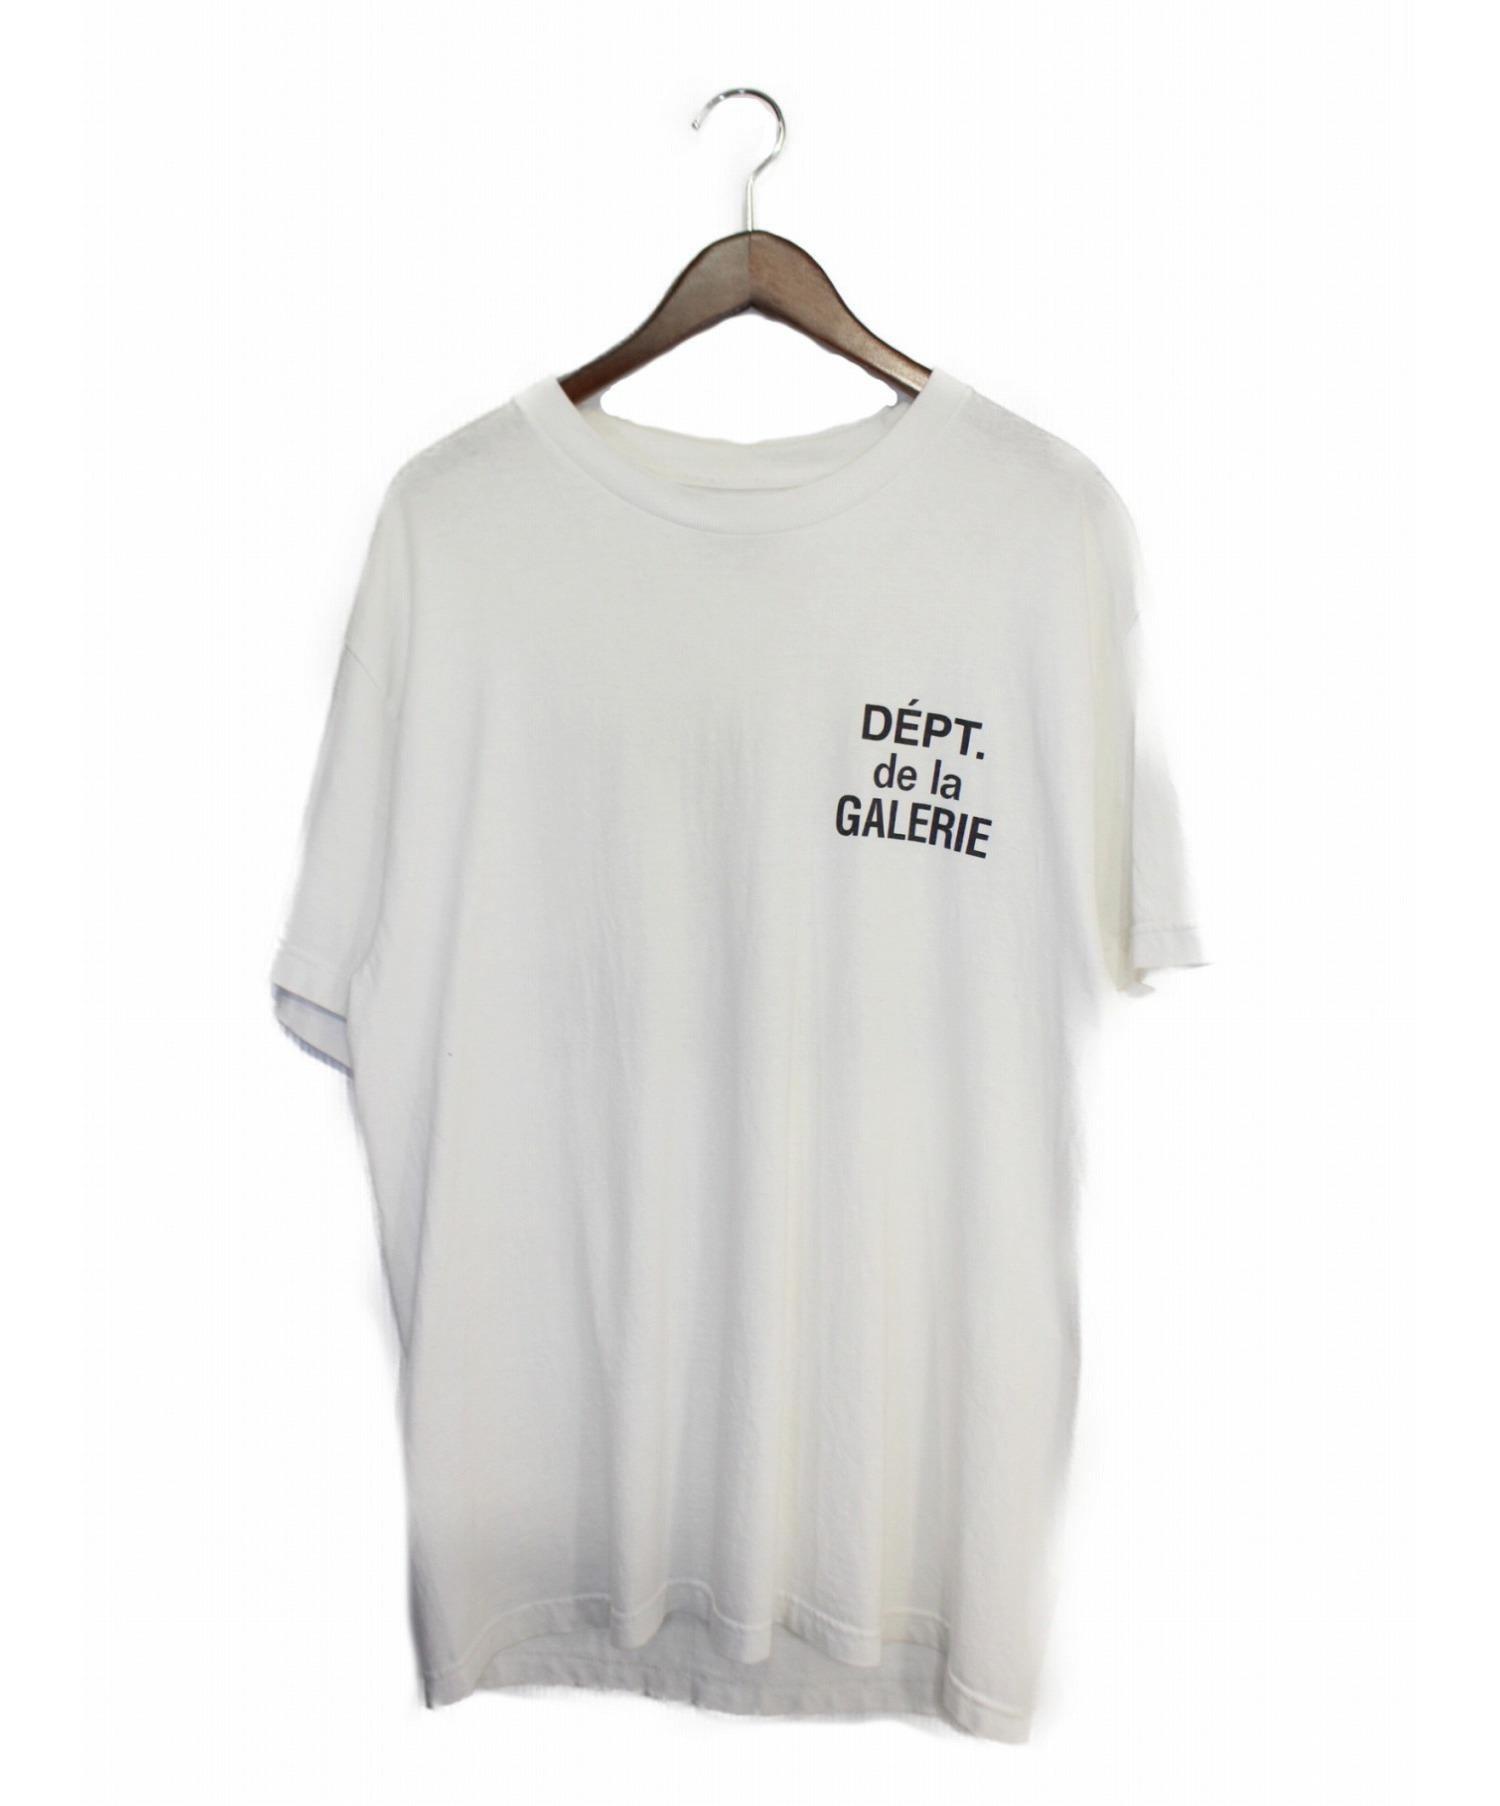 GALLERY DEPT (ギャラリーデプト) Tシャツ ベージュ サイズ:M